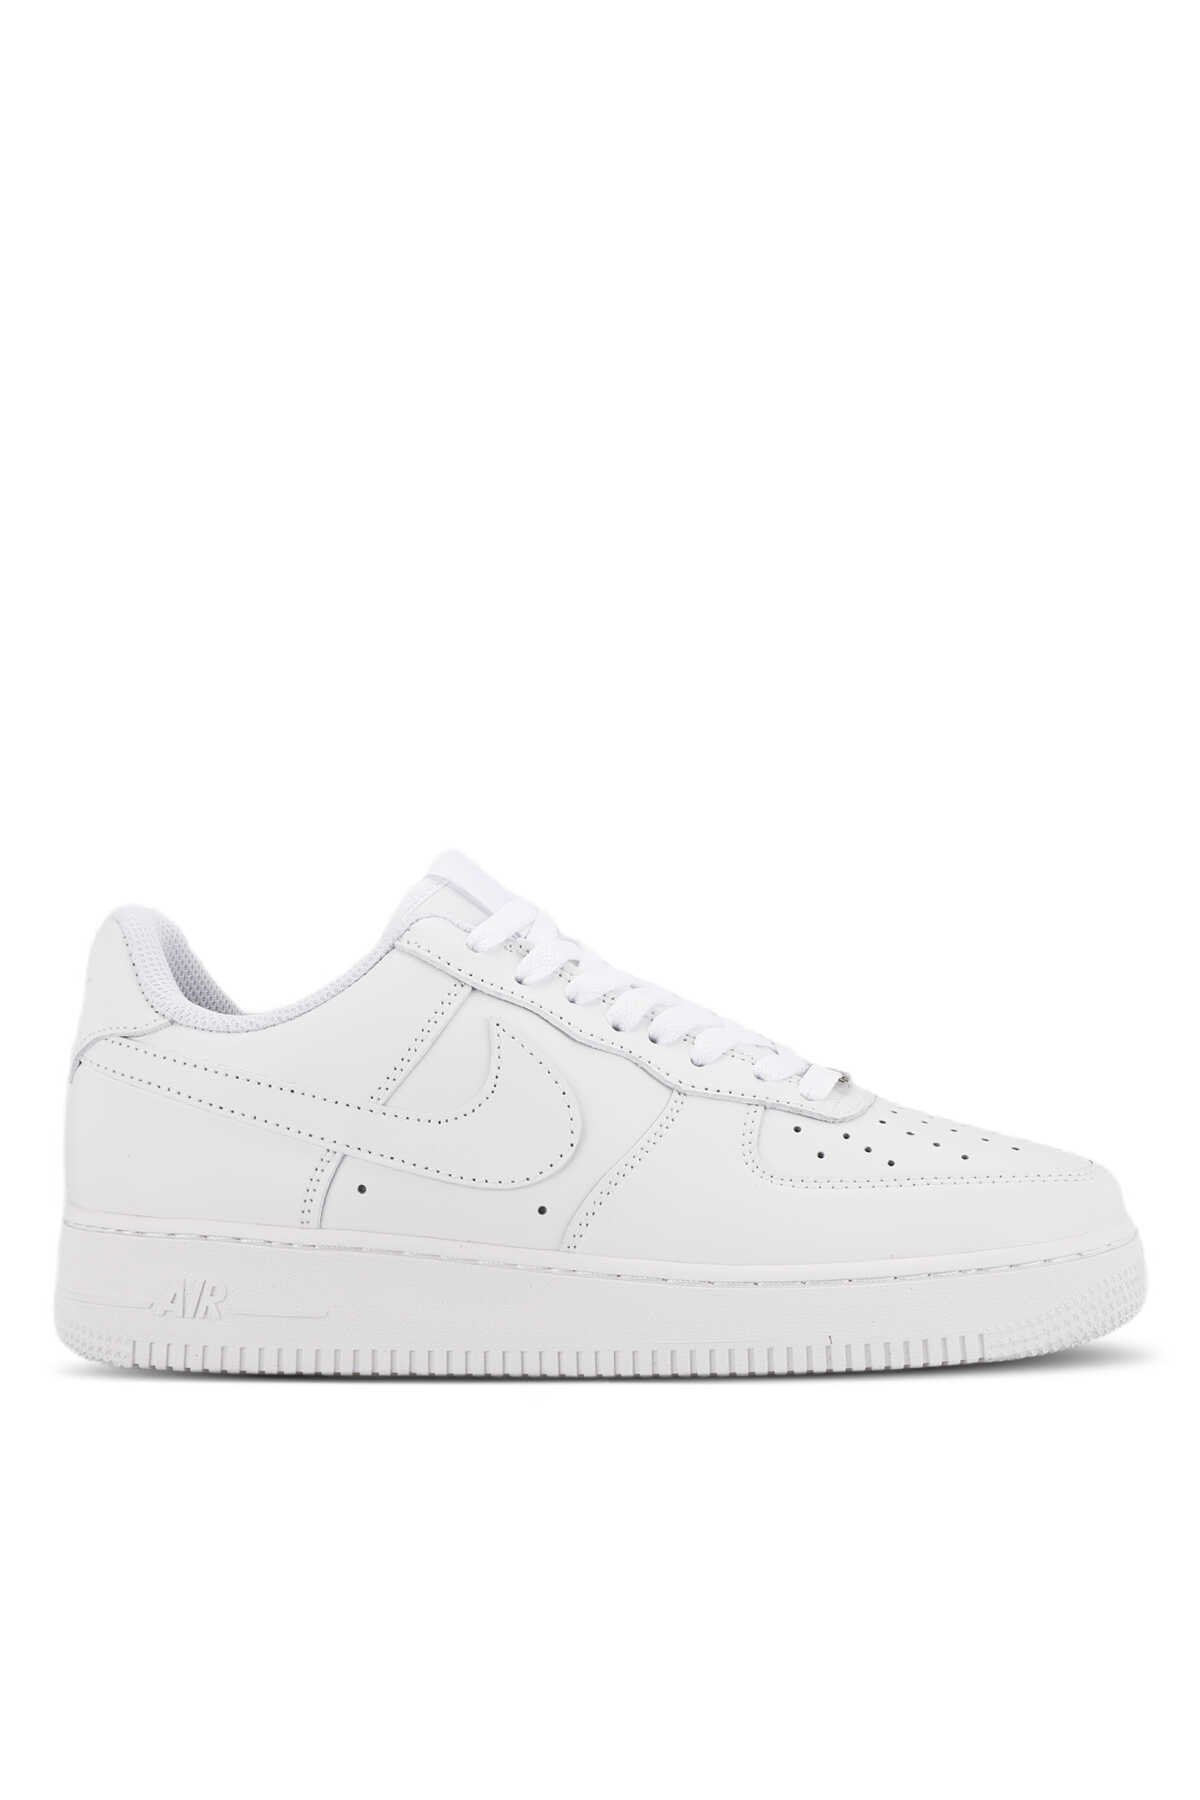 Nike - Nike AIR FORCE 1 MID 07 Sneaker Erkek Ayakkabı Beyaz